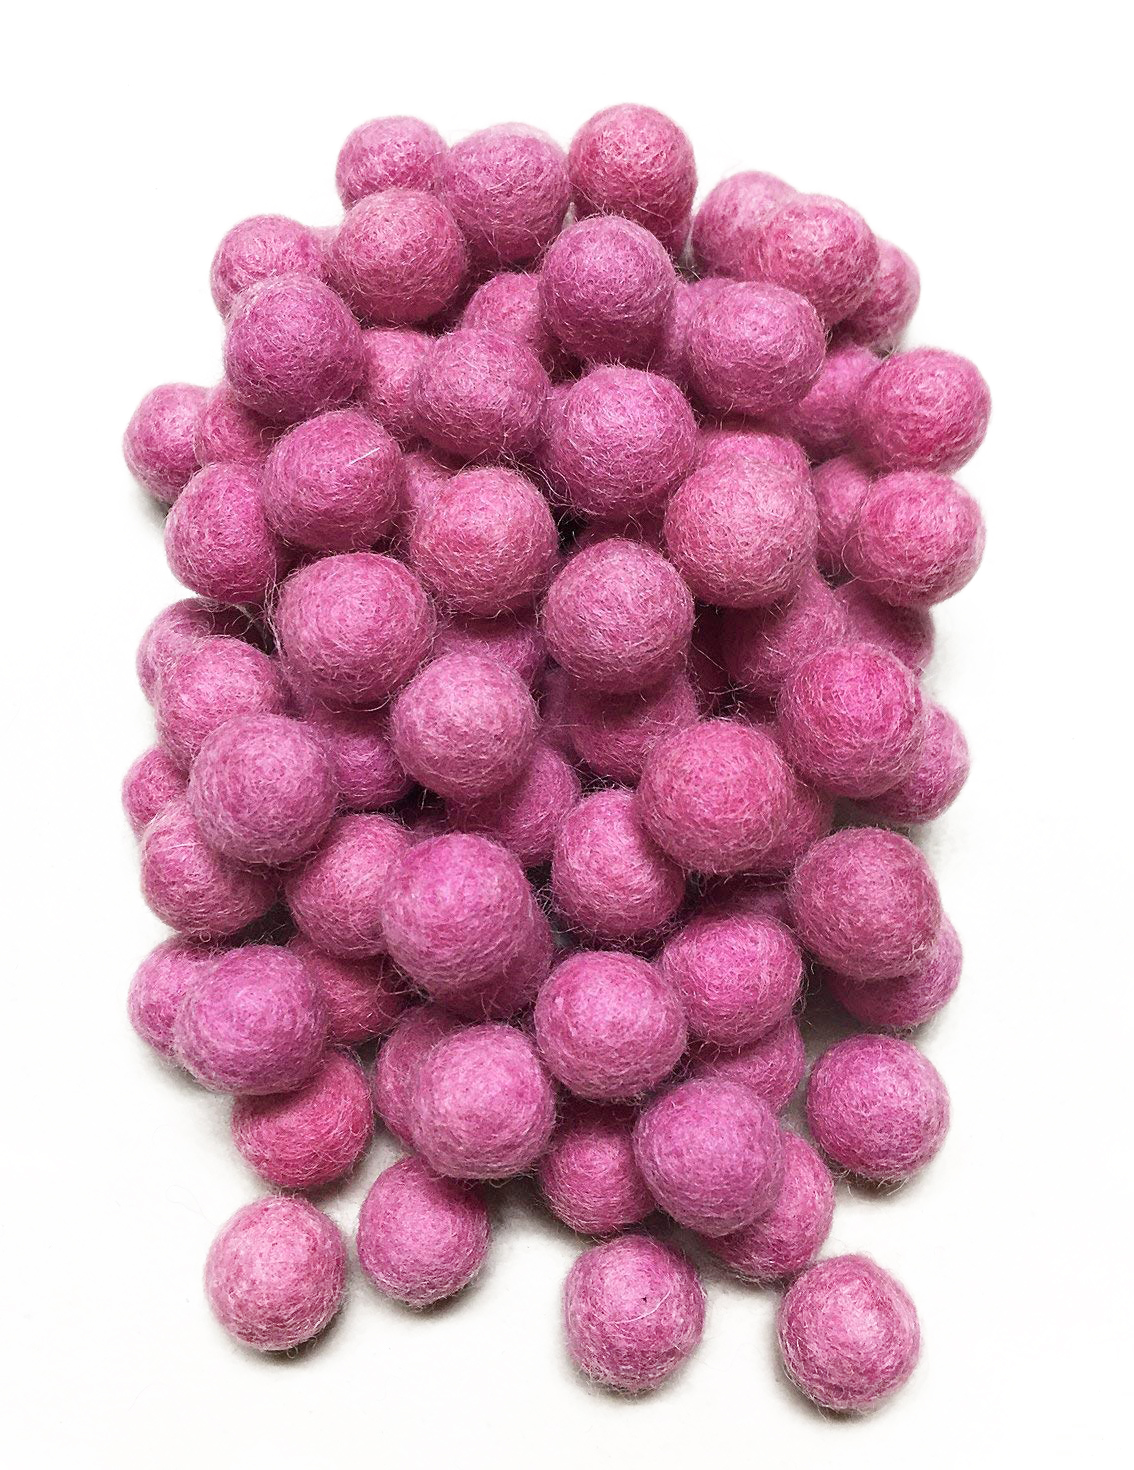 Yarn Place Felt Balls 100 Pure Wool Beads 30mm Royal Fuchsia P1